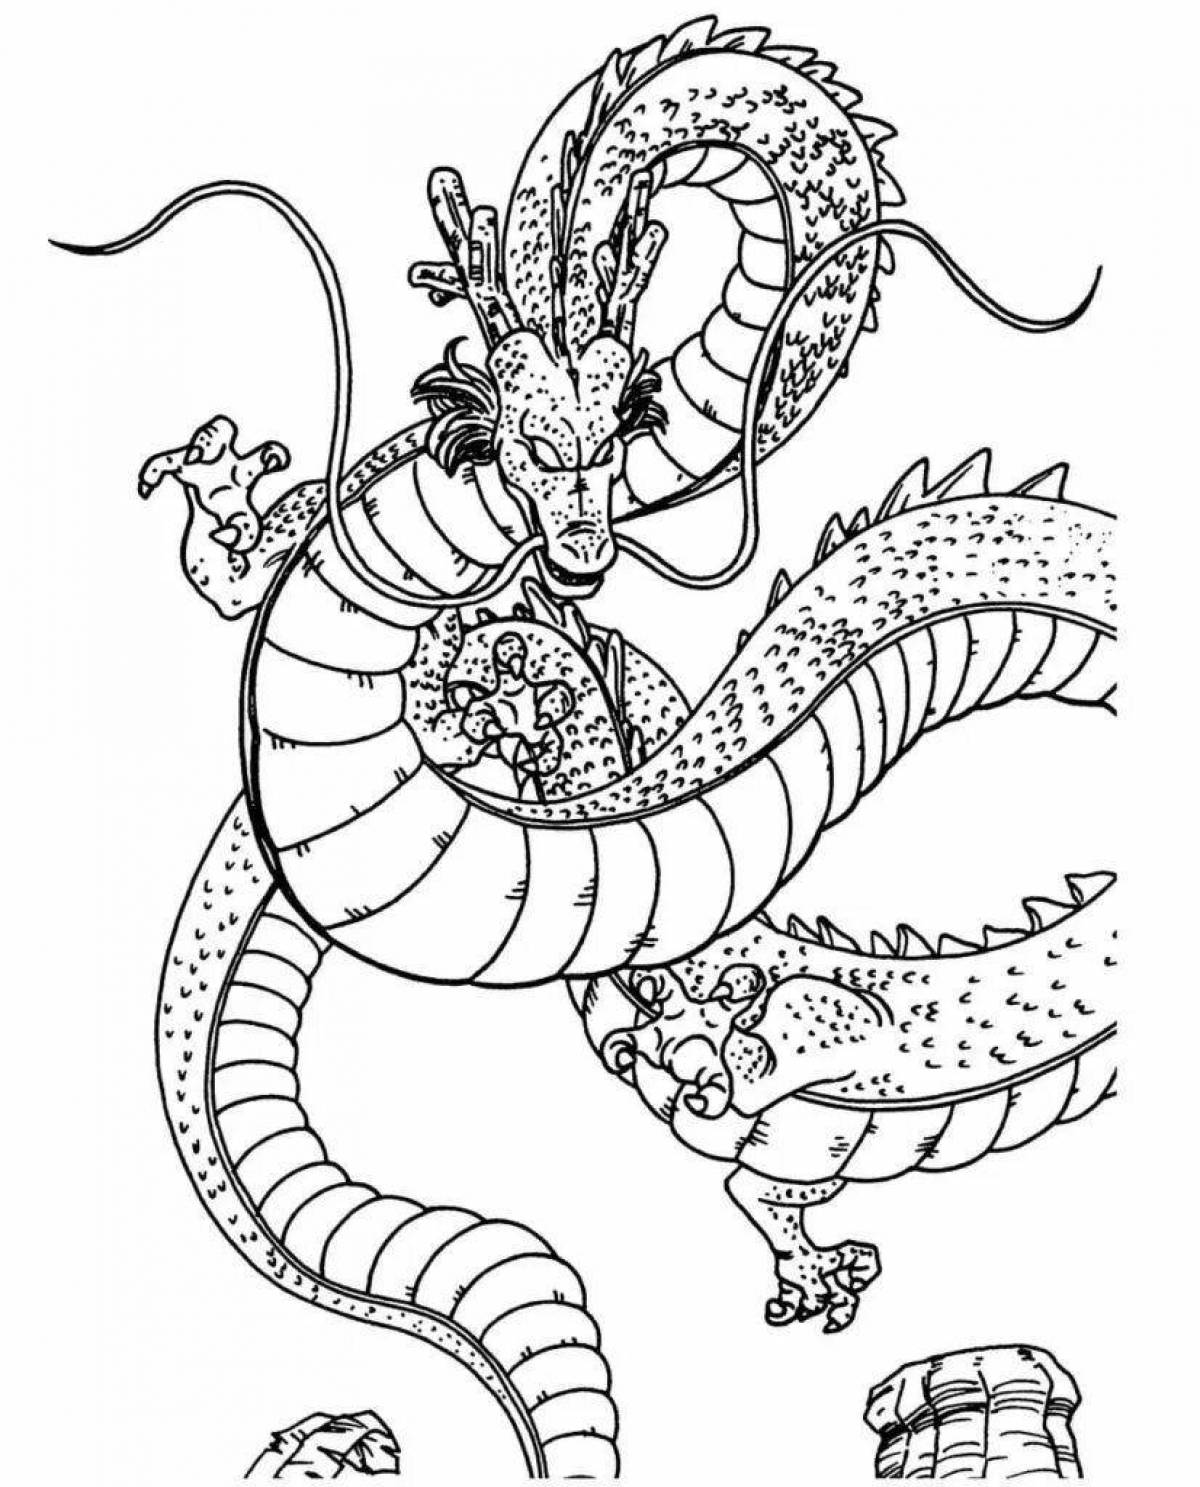 Великолепная китайская раскраска дракона для детей